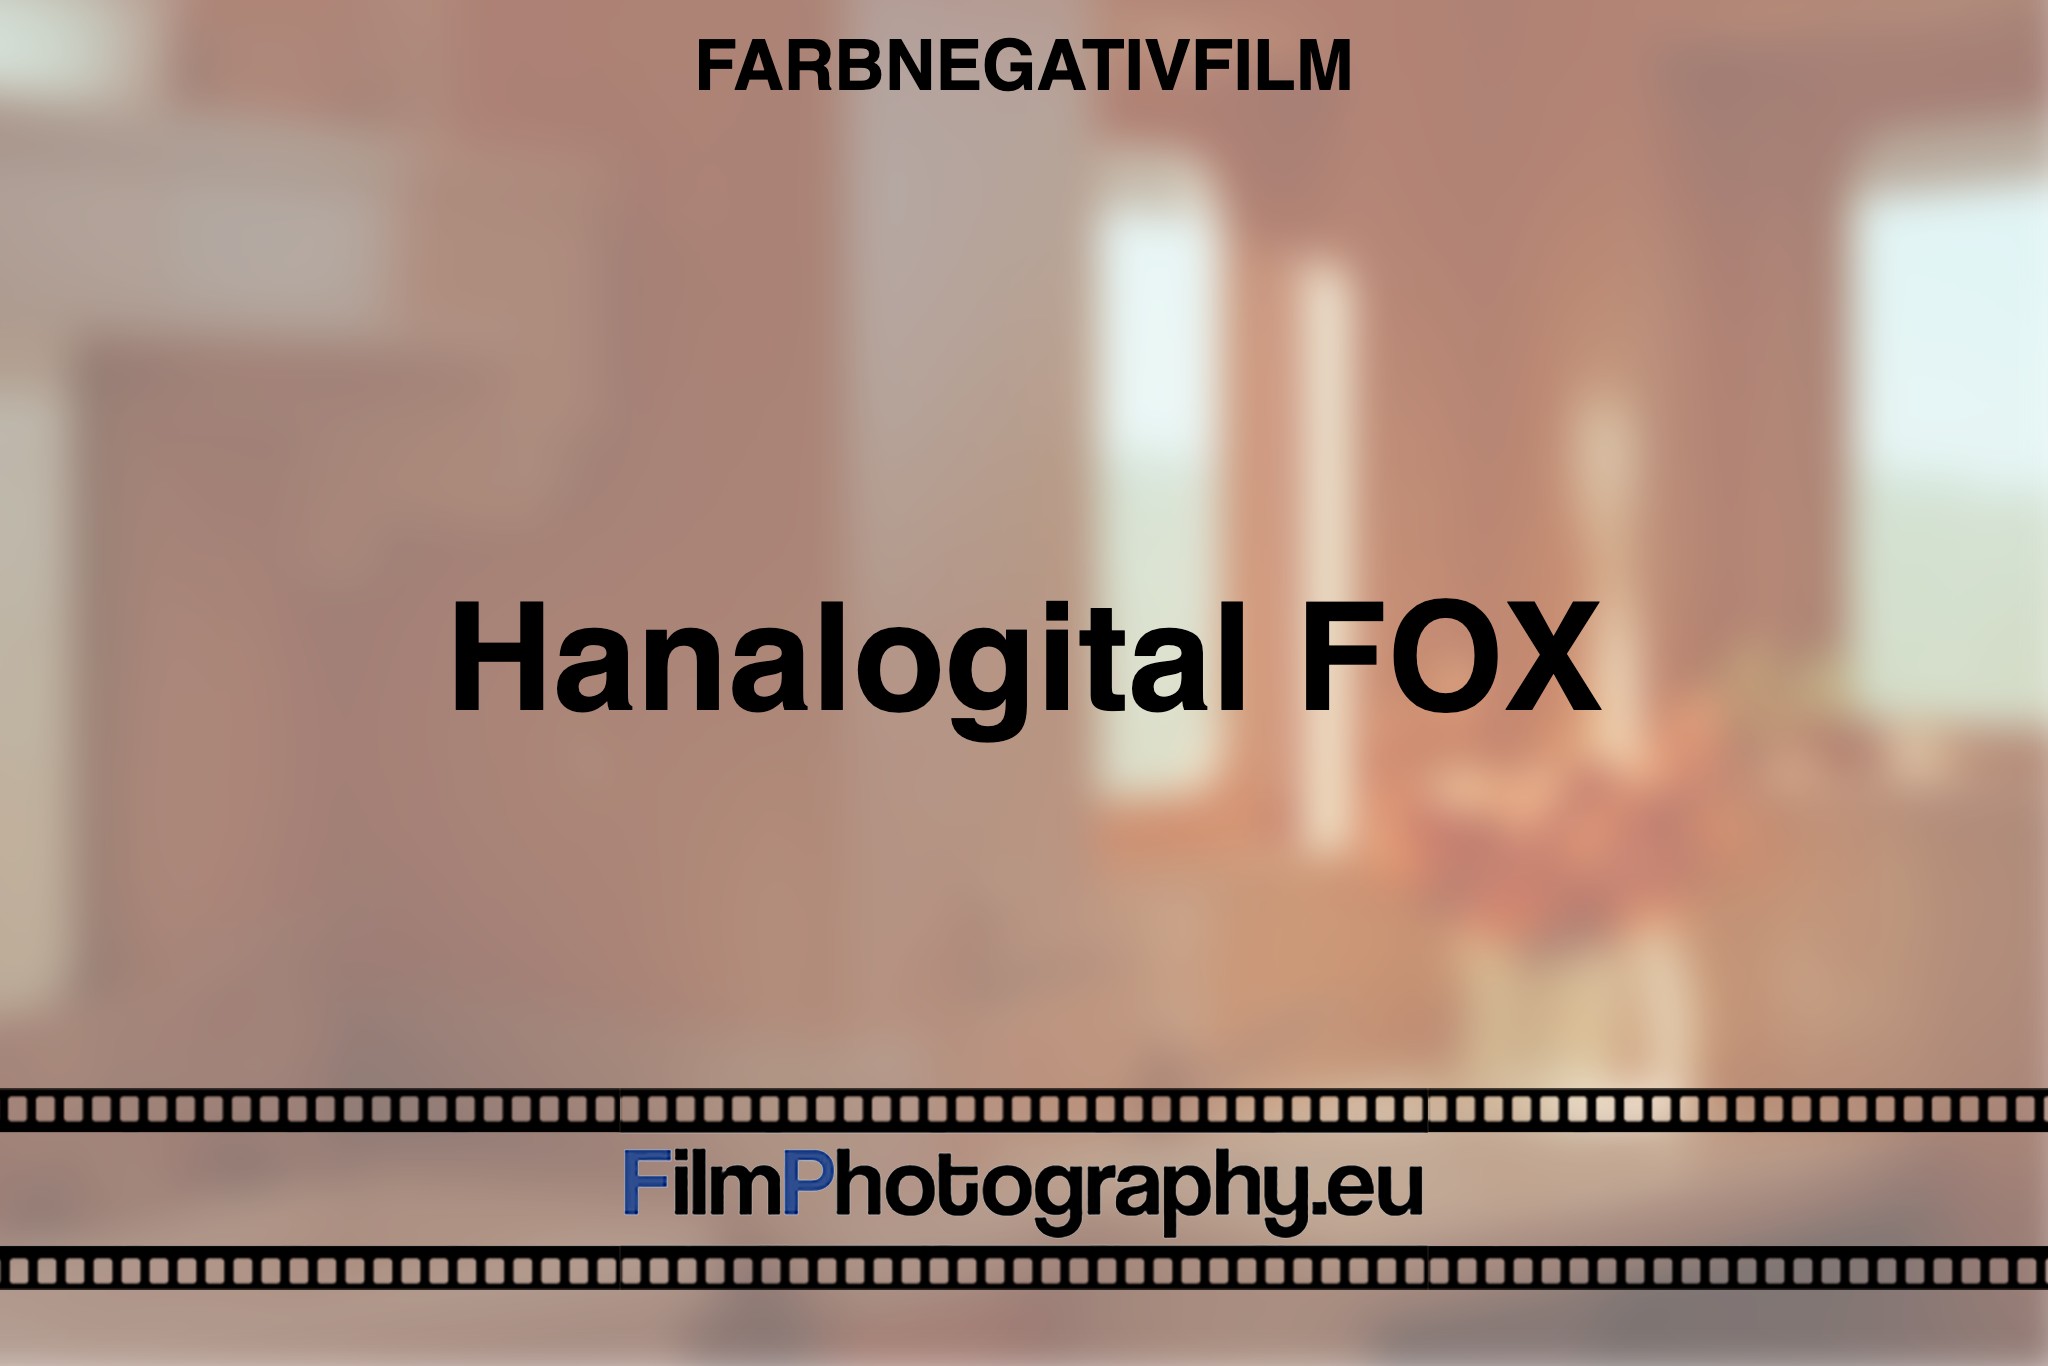 hanalogital-fox-farbnegativfilm-bnv